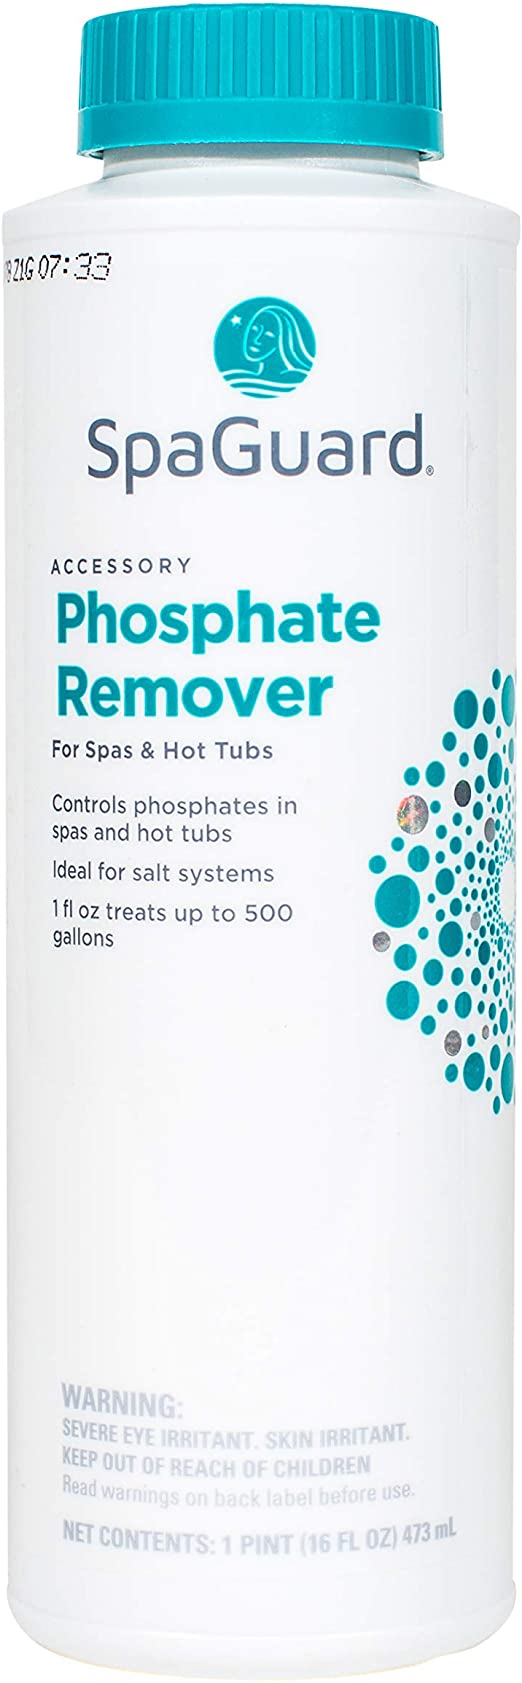 SpaGuard Phosphate Remover